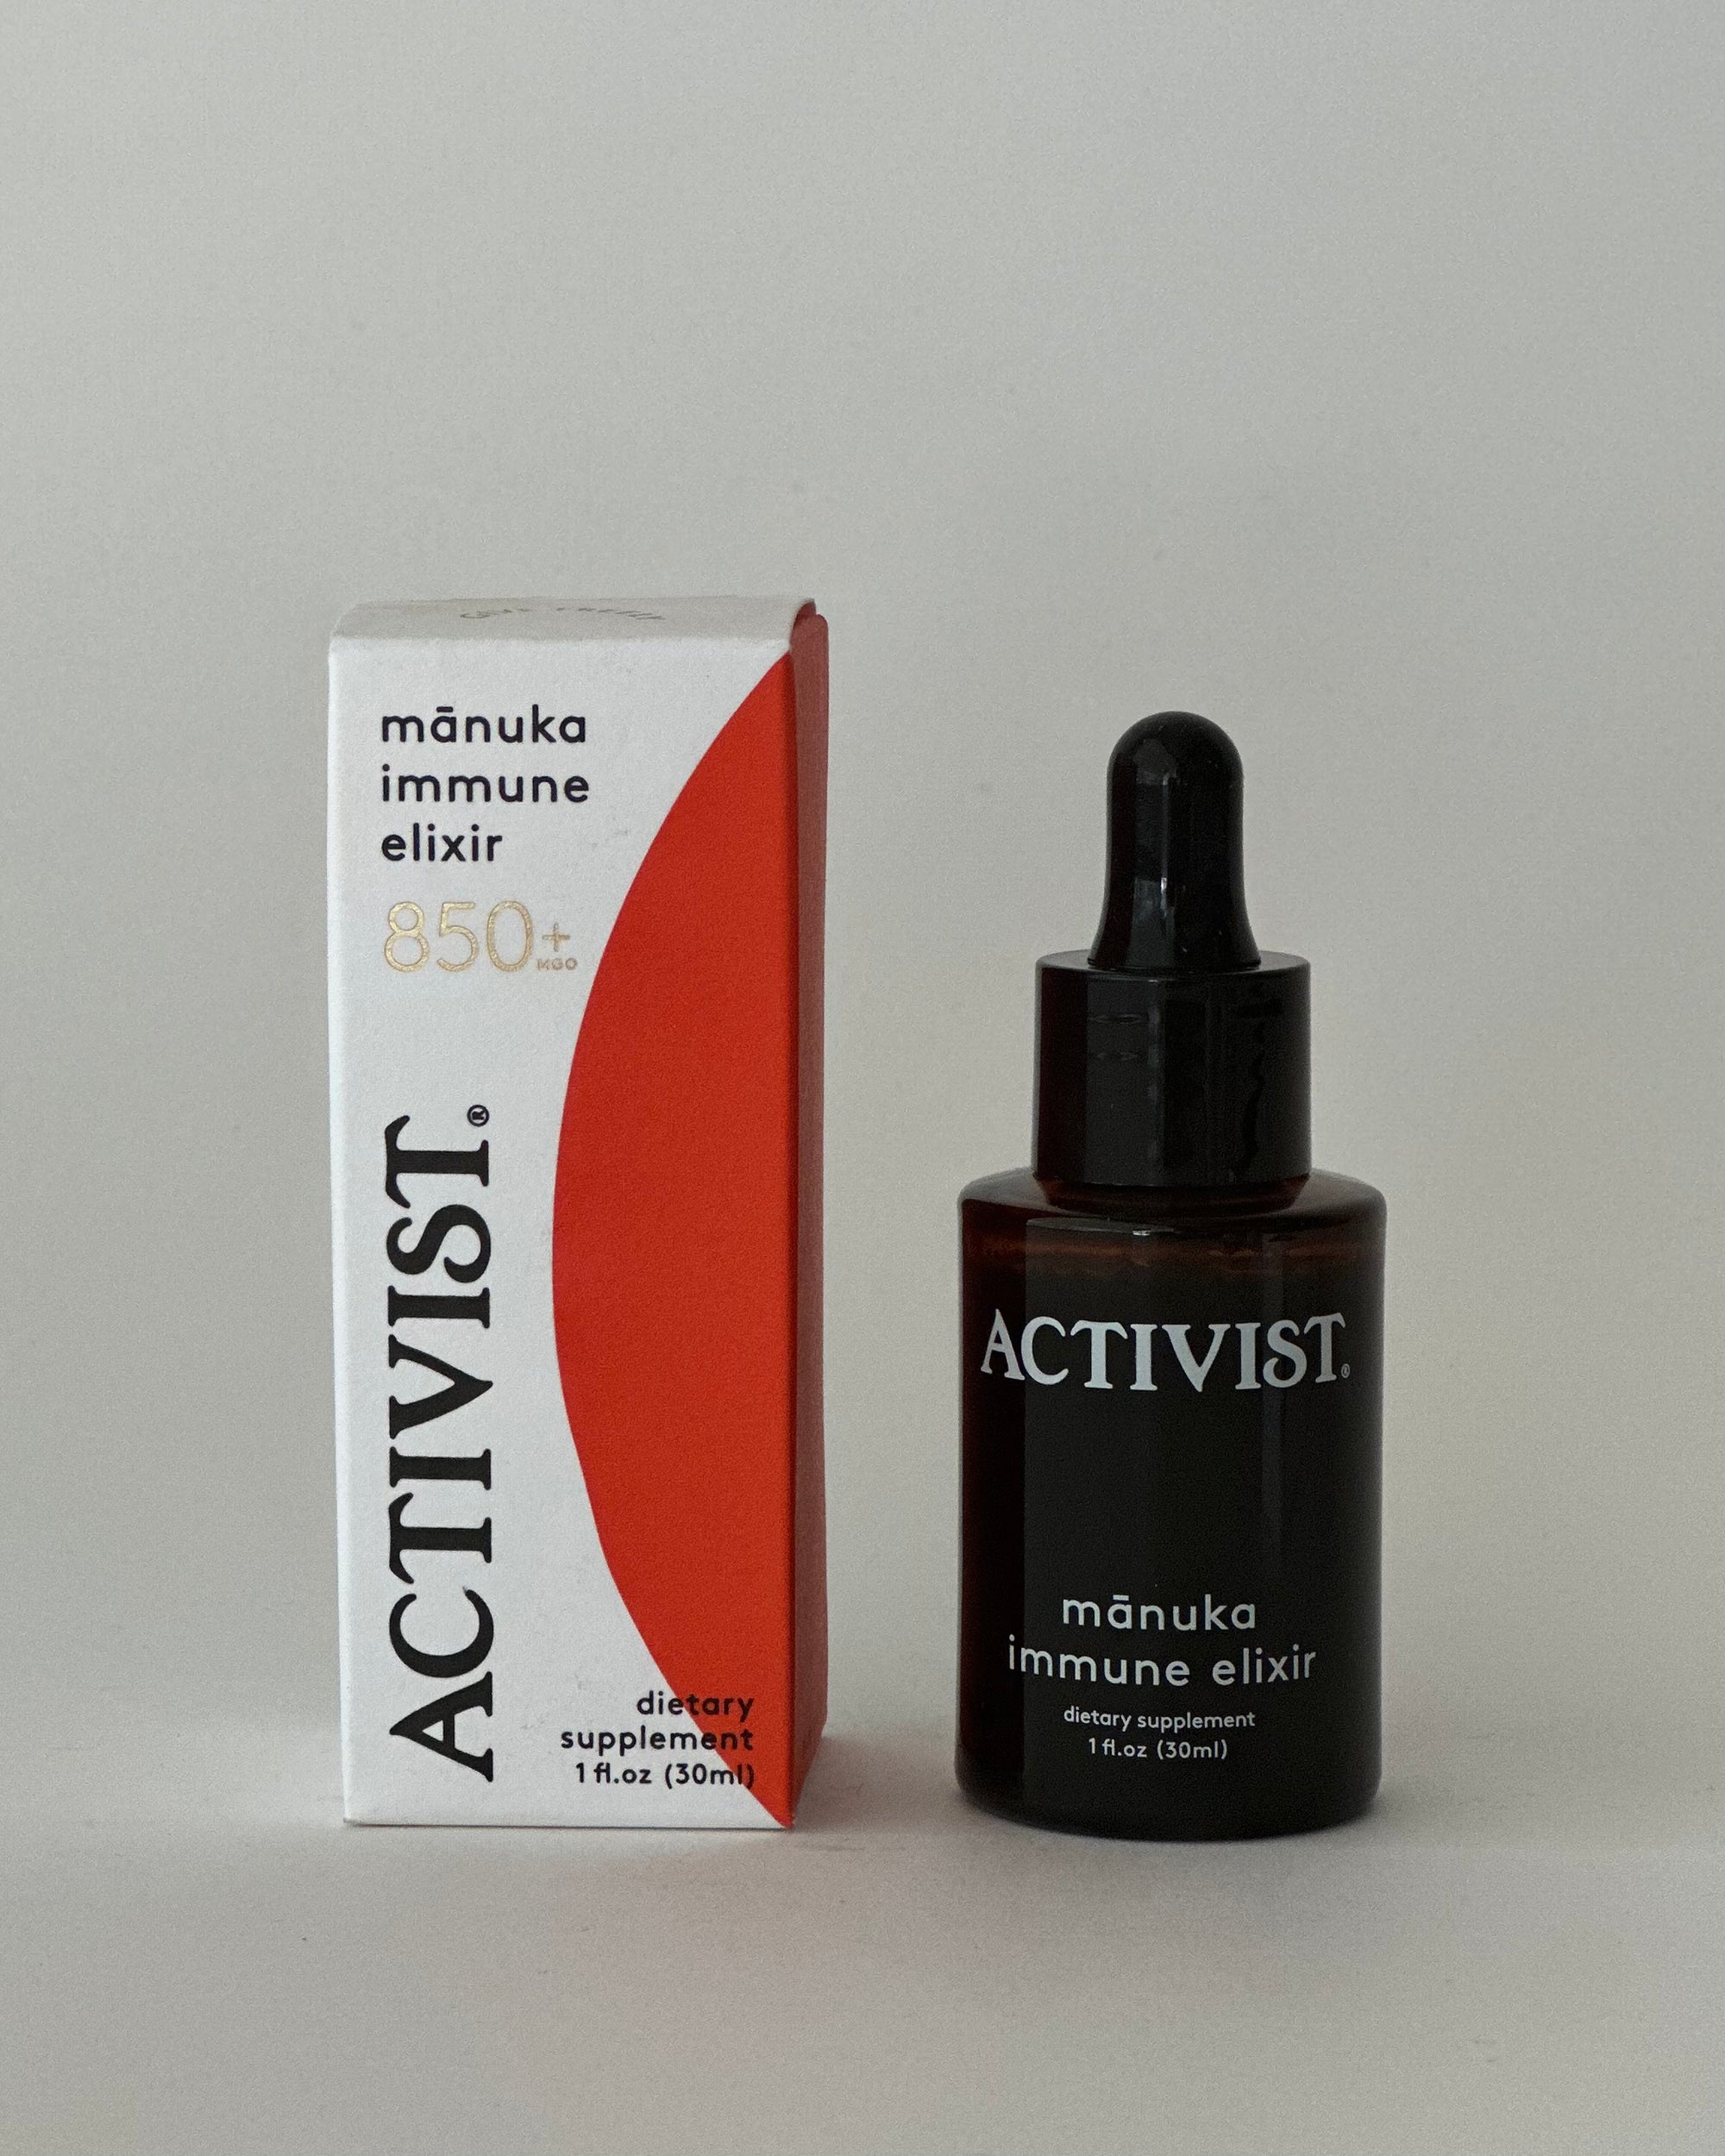 ACTIVIST – Mānuka Immune Elixir